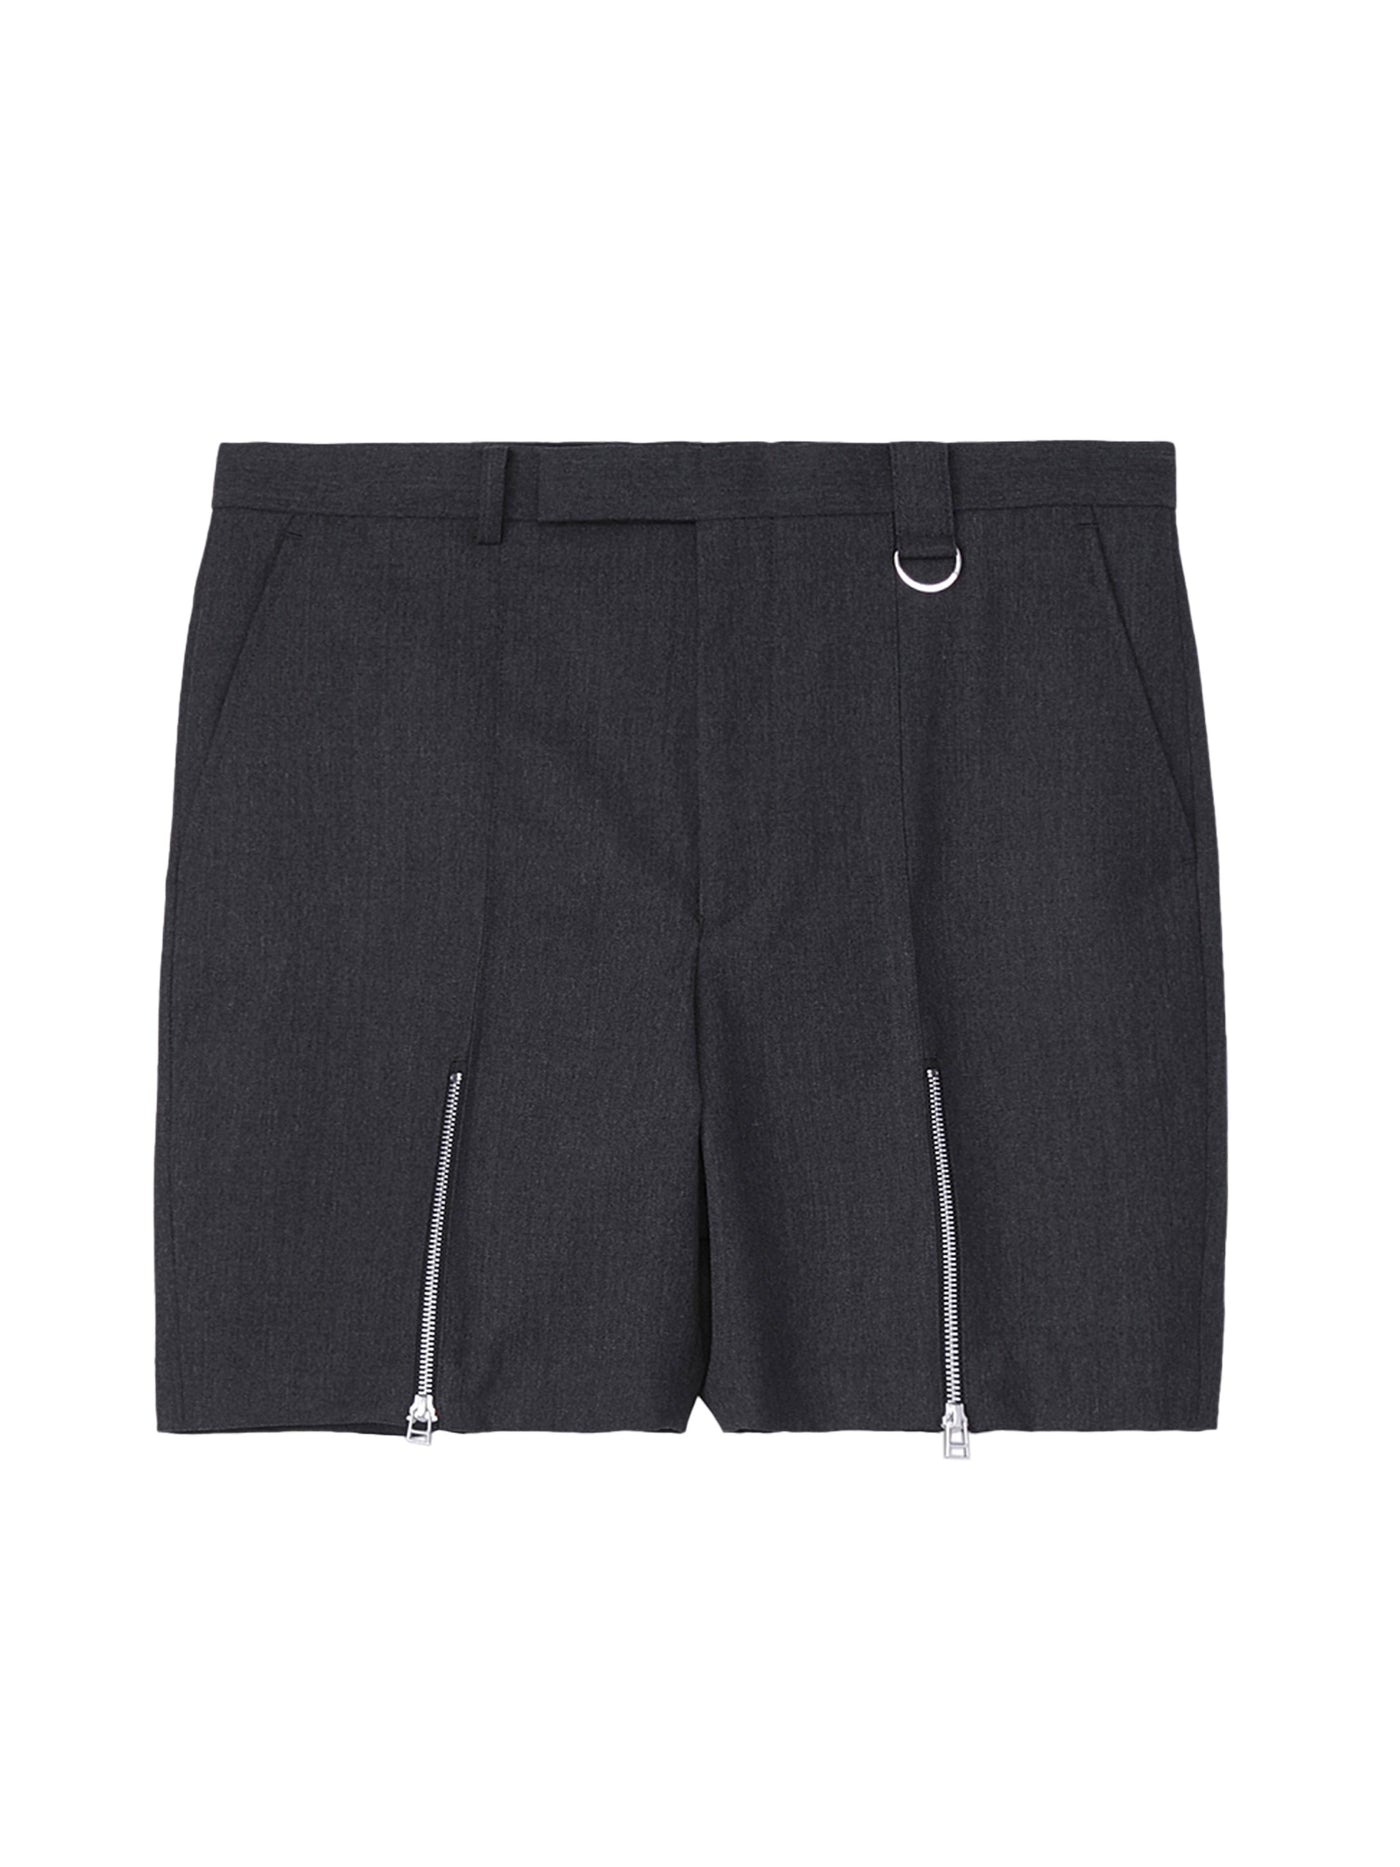 Wool gabardine zip shorts